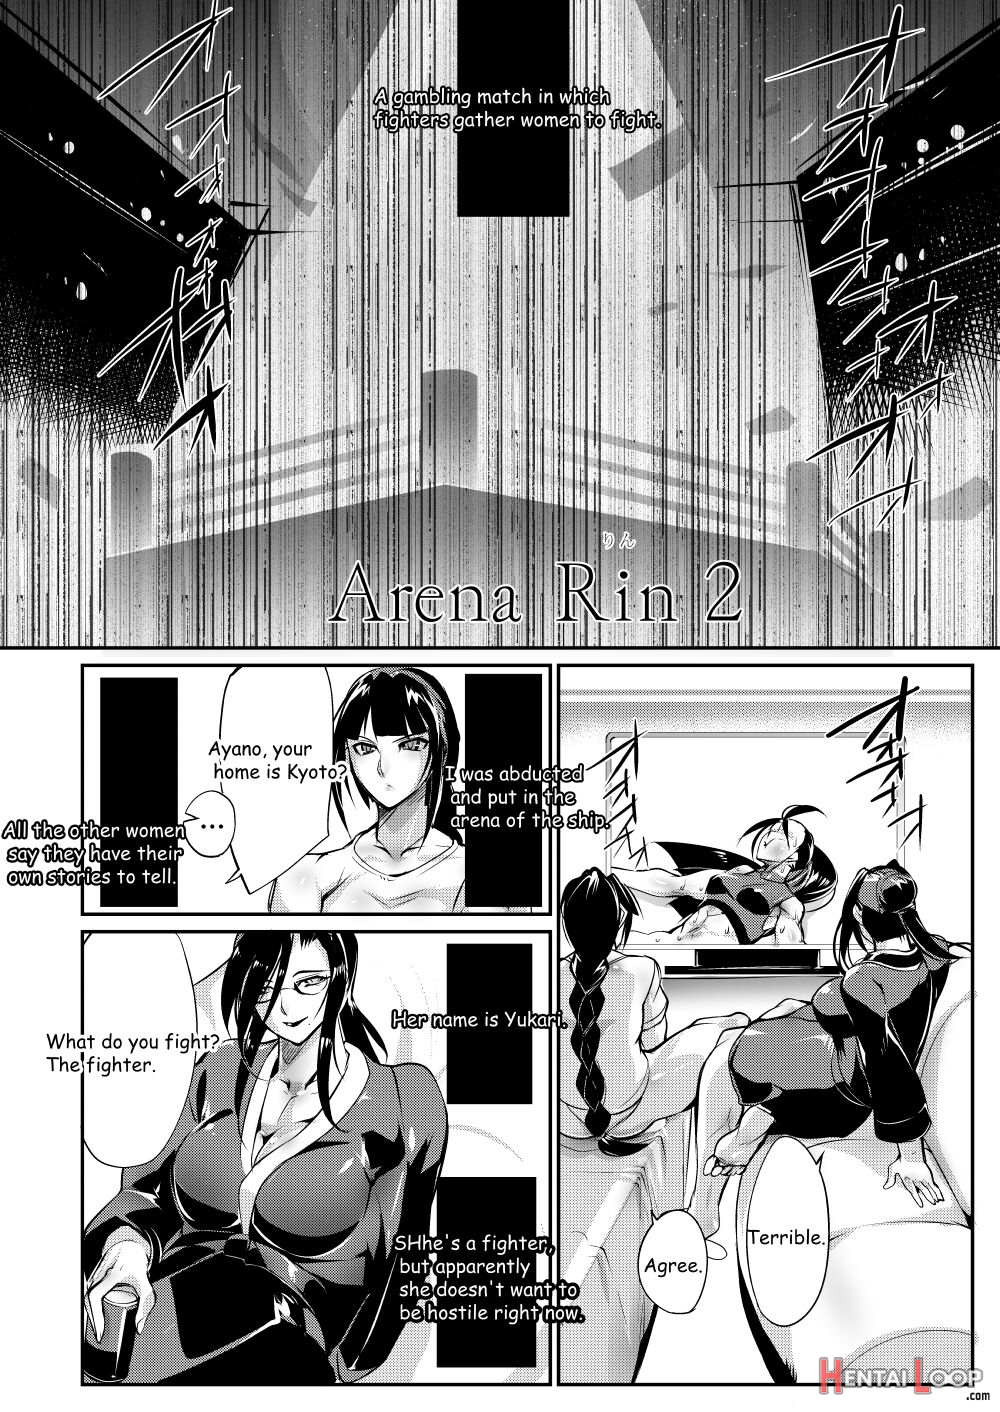 Tougijou Rin - Arena Rin 2 page 3